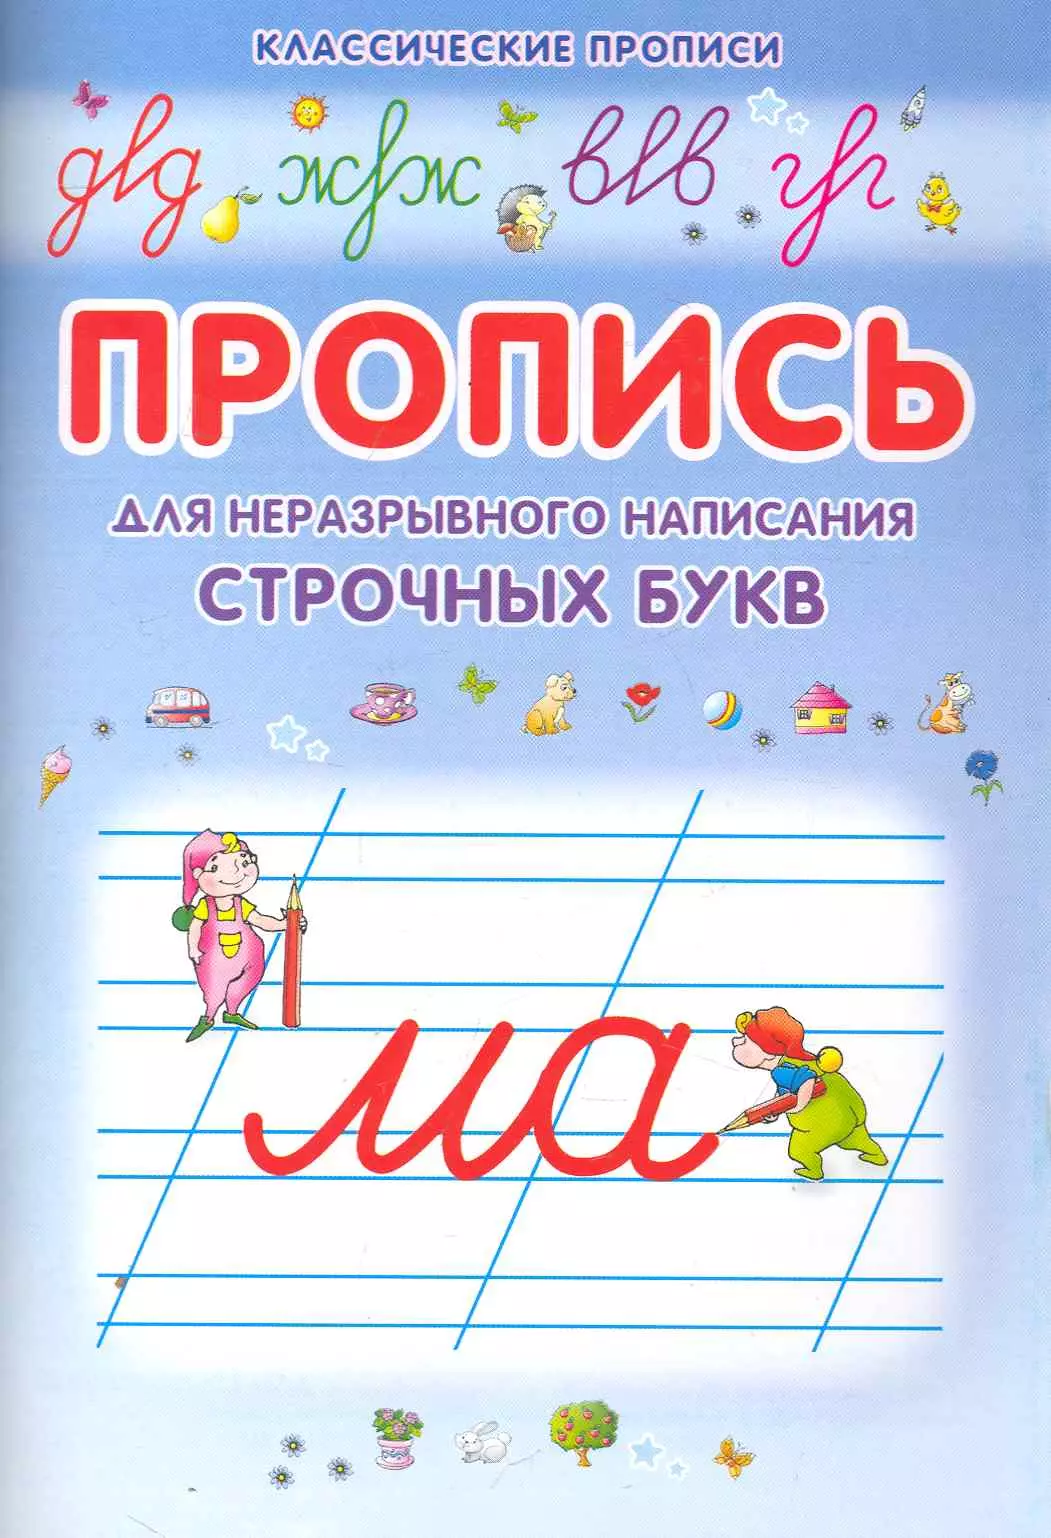 Добрева Ксения Владимировна - Неразрывно пишем строчные буквы